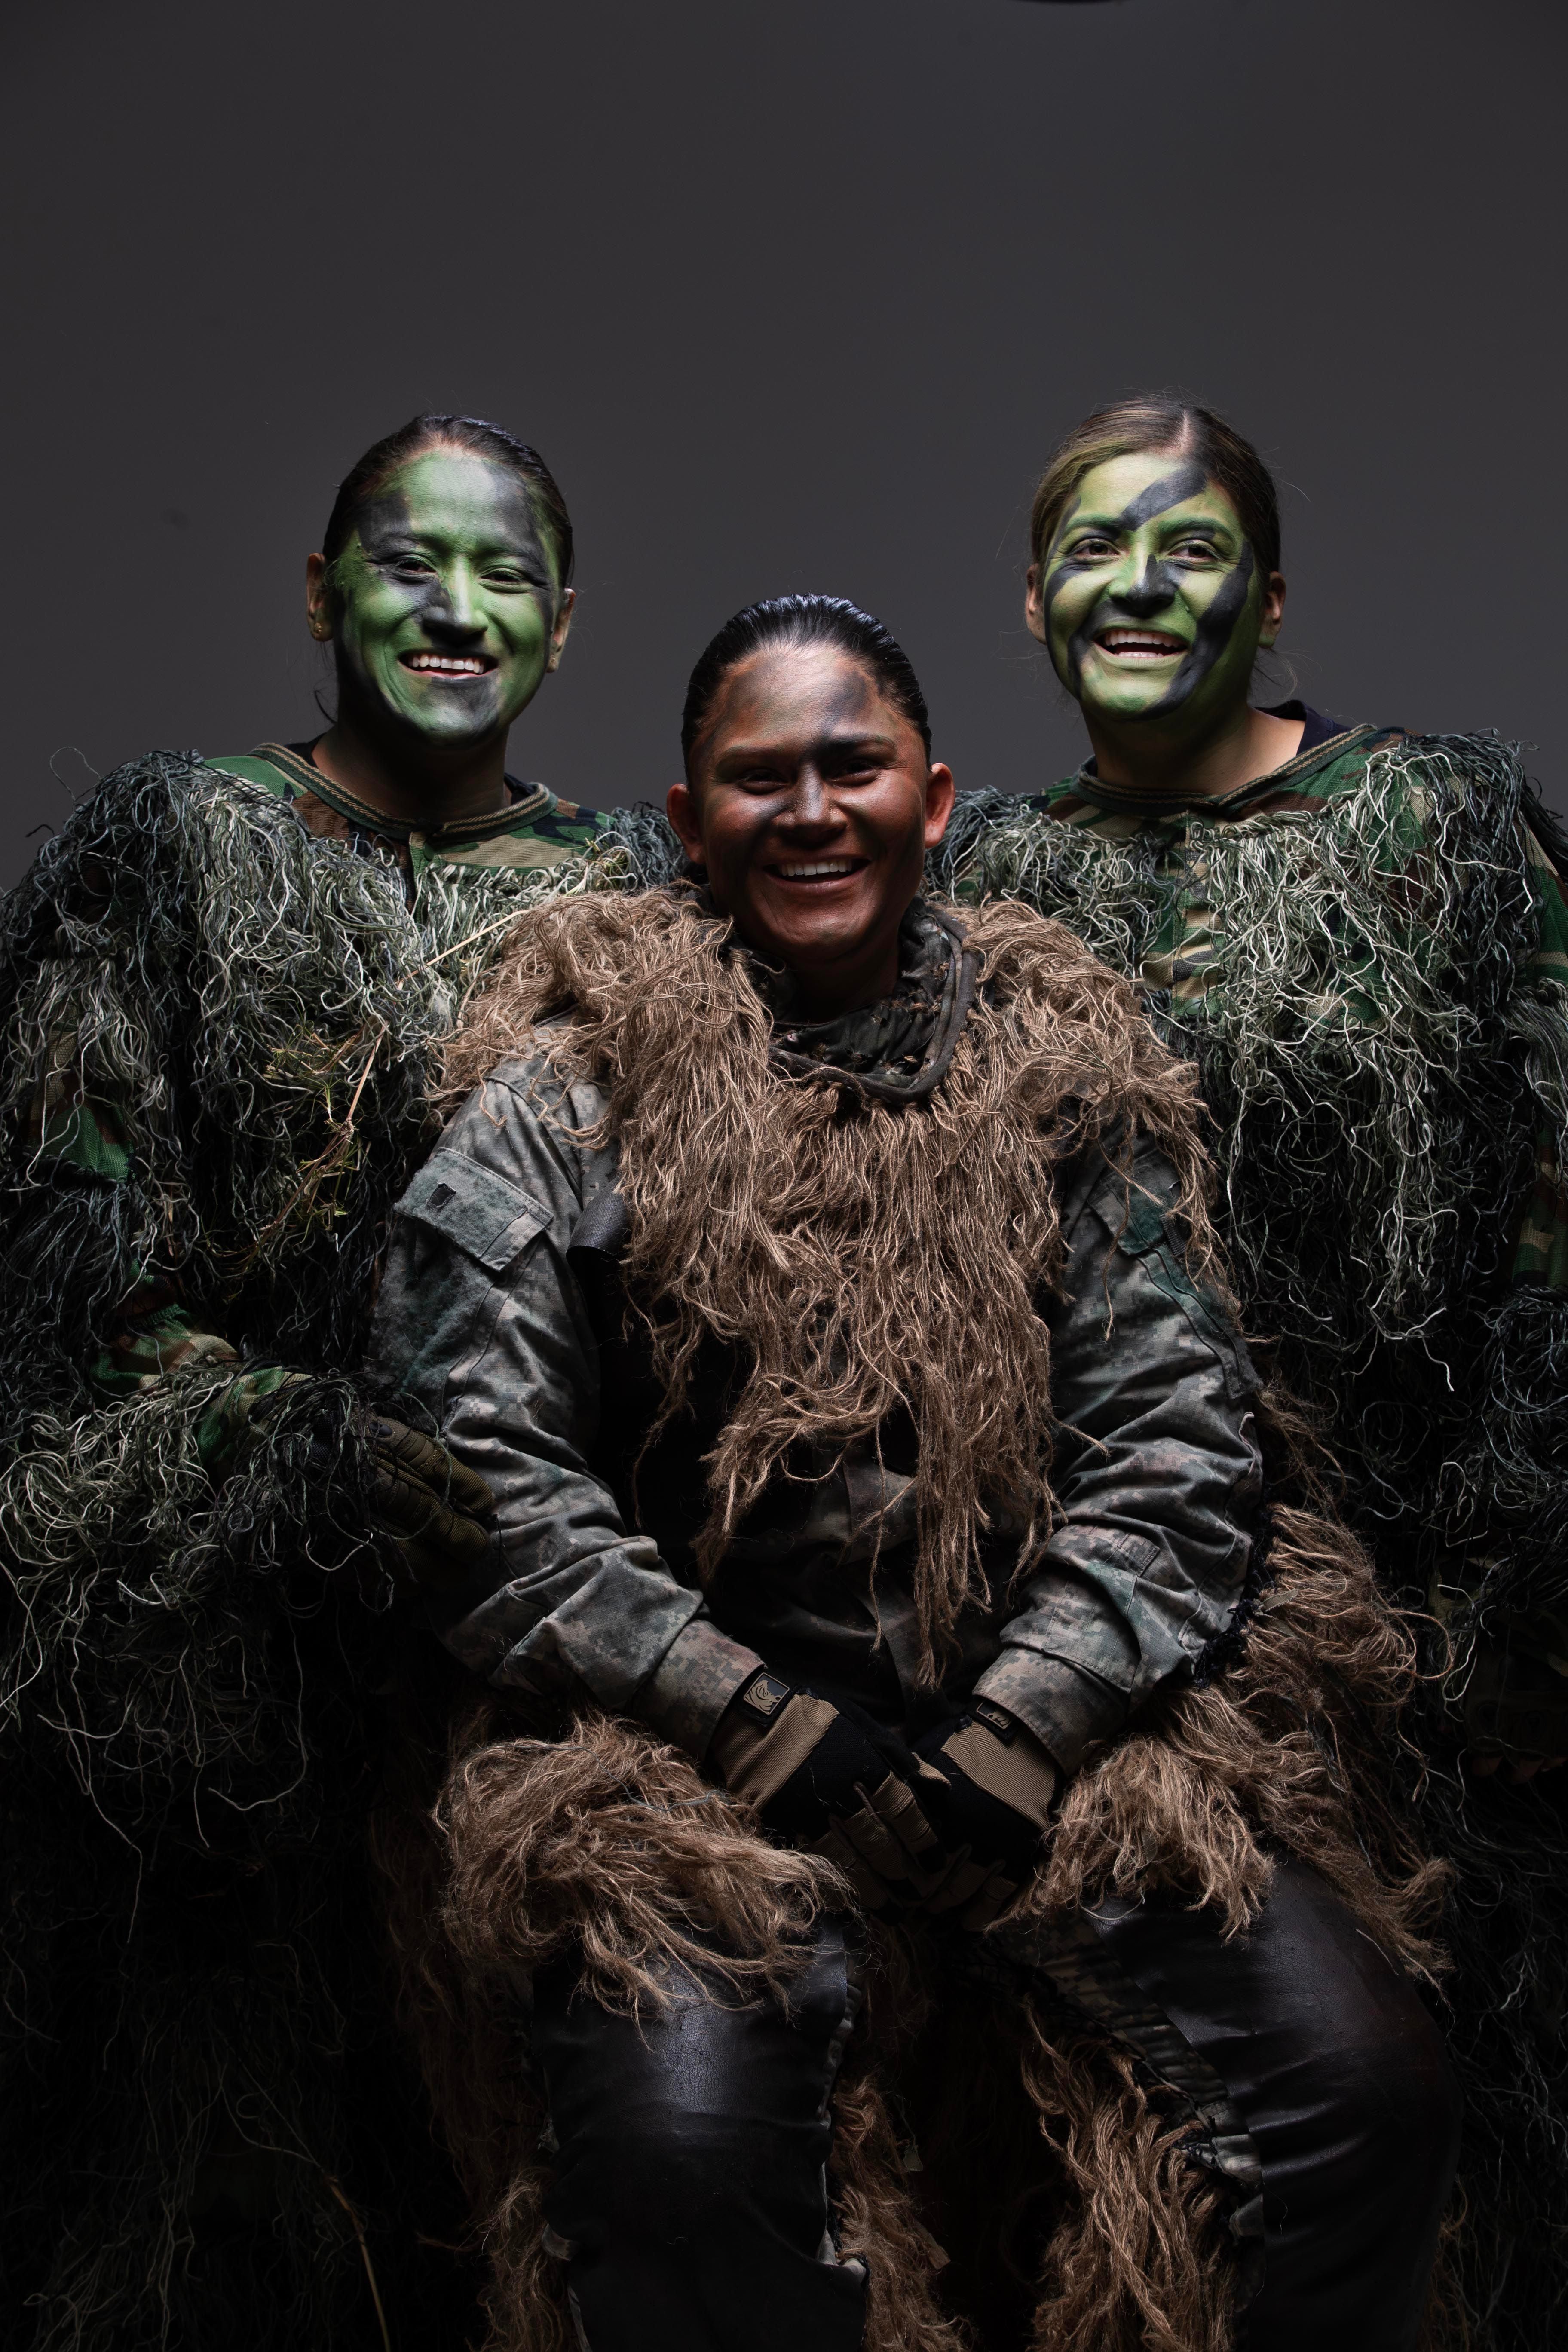 Las oficiales Porras, Vargas y Ramírez son el vivo ejemplo del empoderamiento de la mujer.  Ellas destacan en el Servicio Nacional de Guardacostas de Costa Rica.
